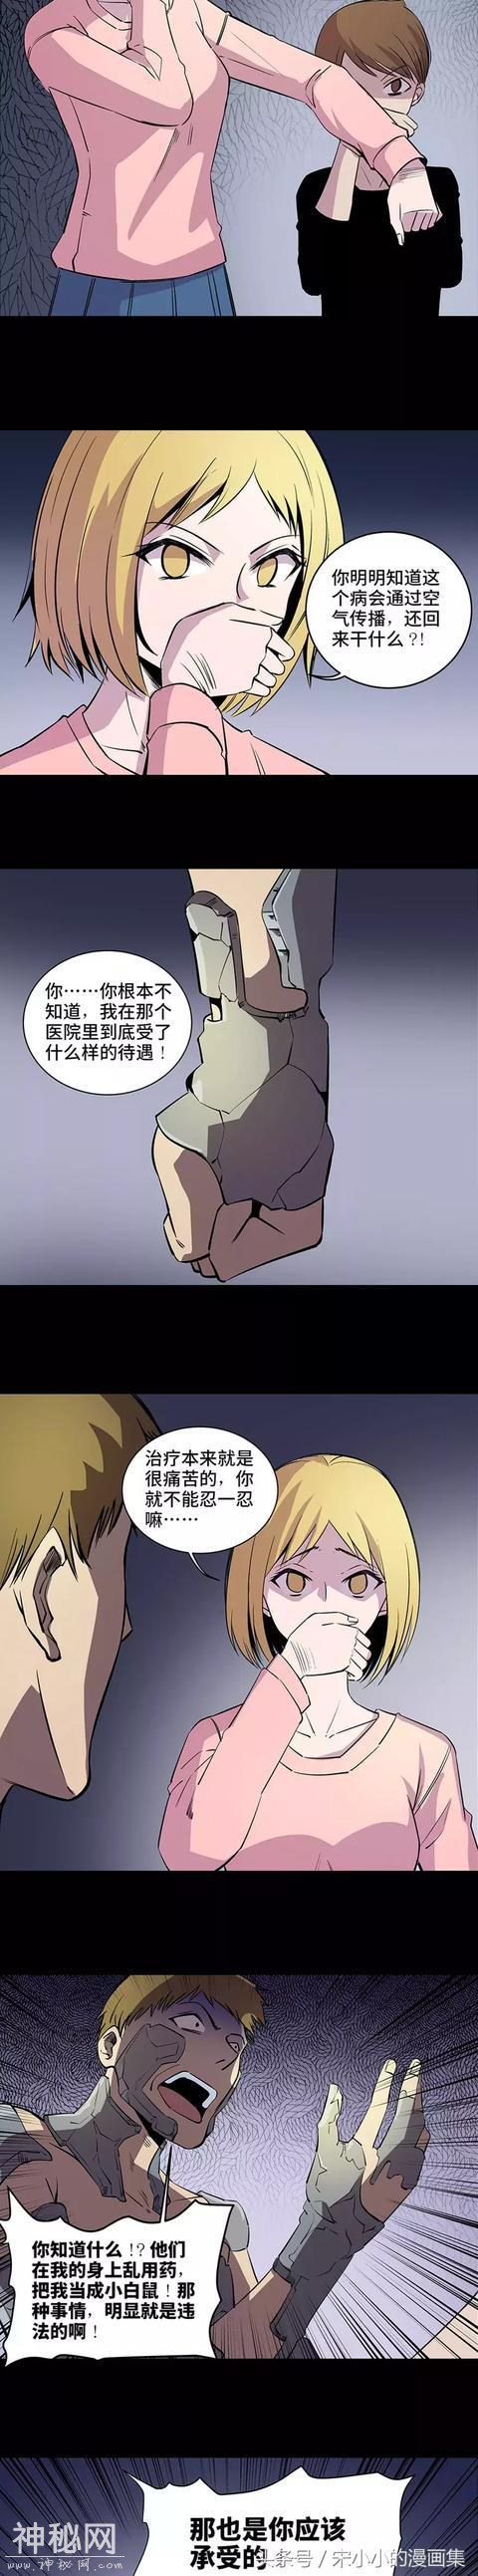 精品漫画《让人变成石头的怪病》-17.jpg